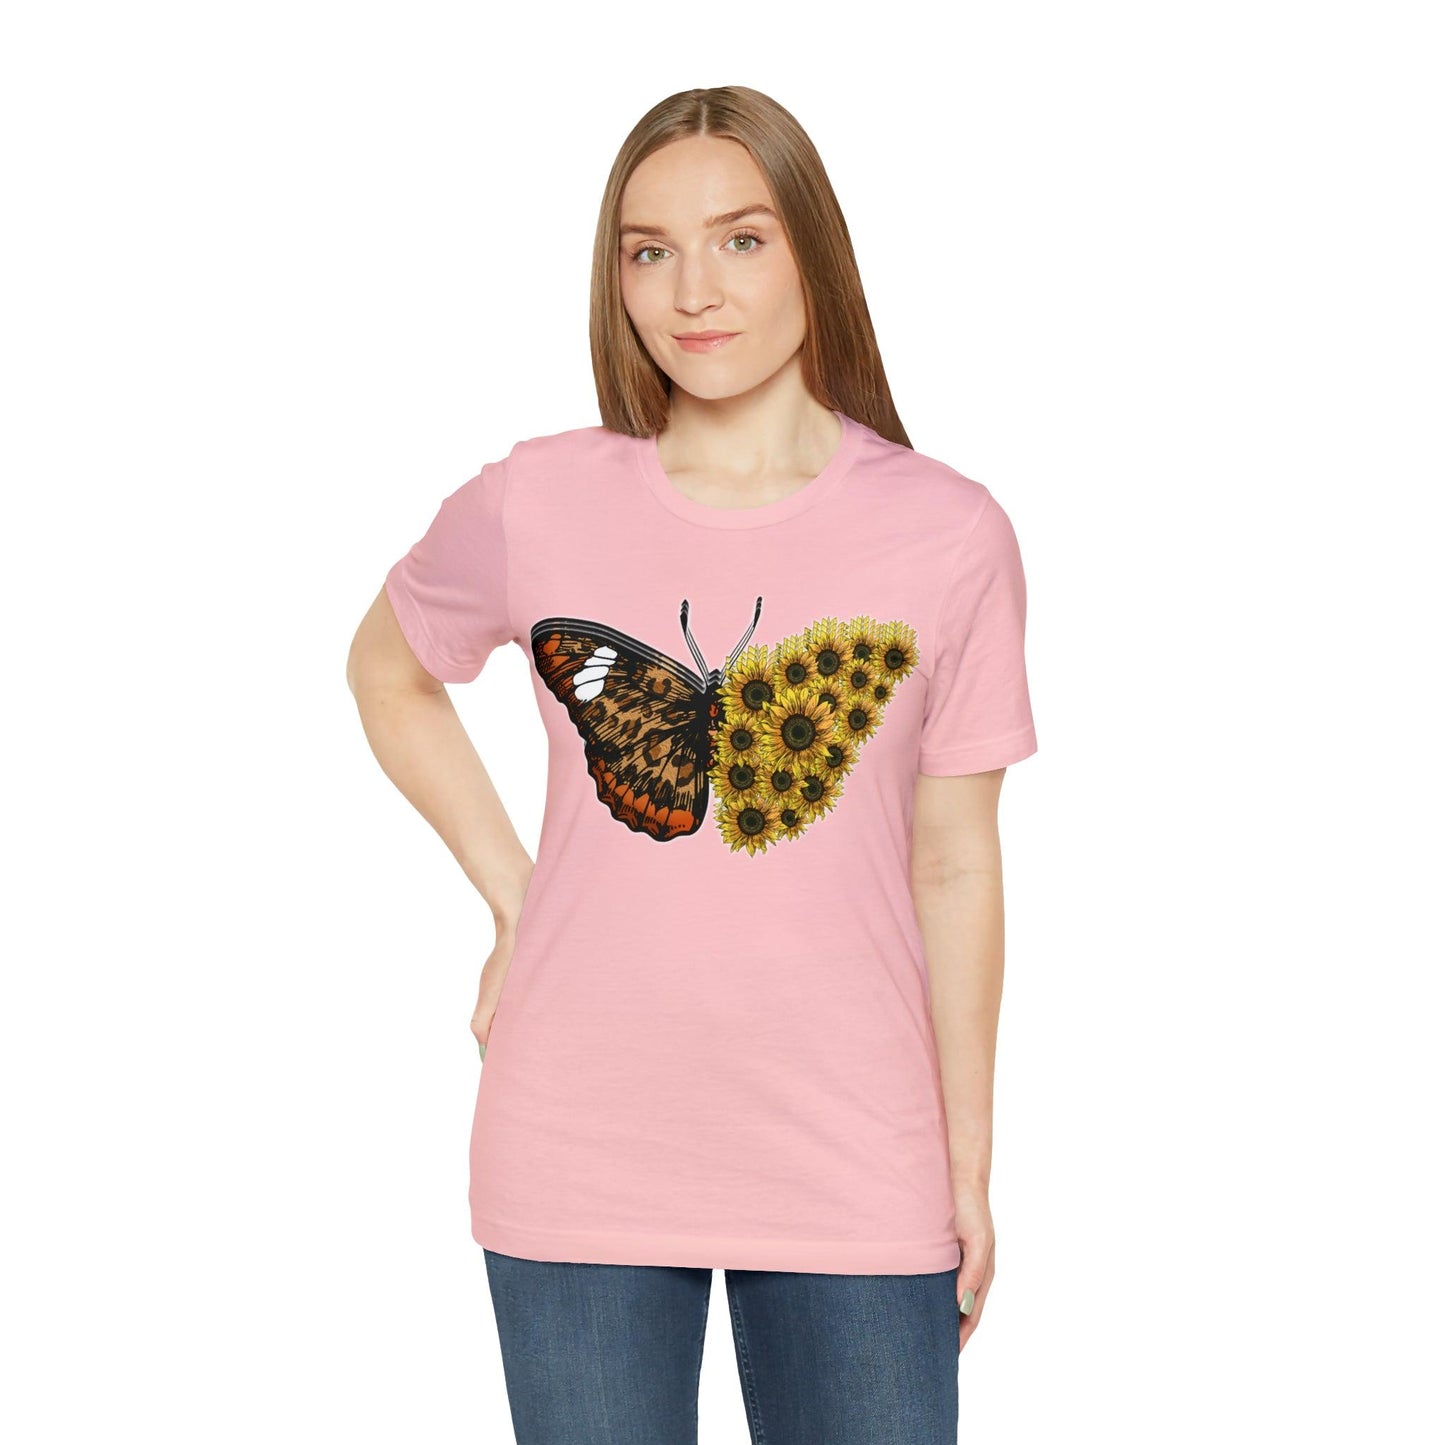 Butterfly Shirt, Sunflower Shirt, Insect Shirt Nature love T shirtFloral Tee Shirt, Flower Shirt, Garden Shirt, Womens Fall Summer shirt - Giftsmojo